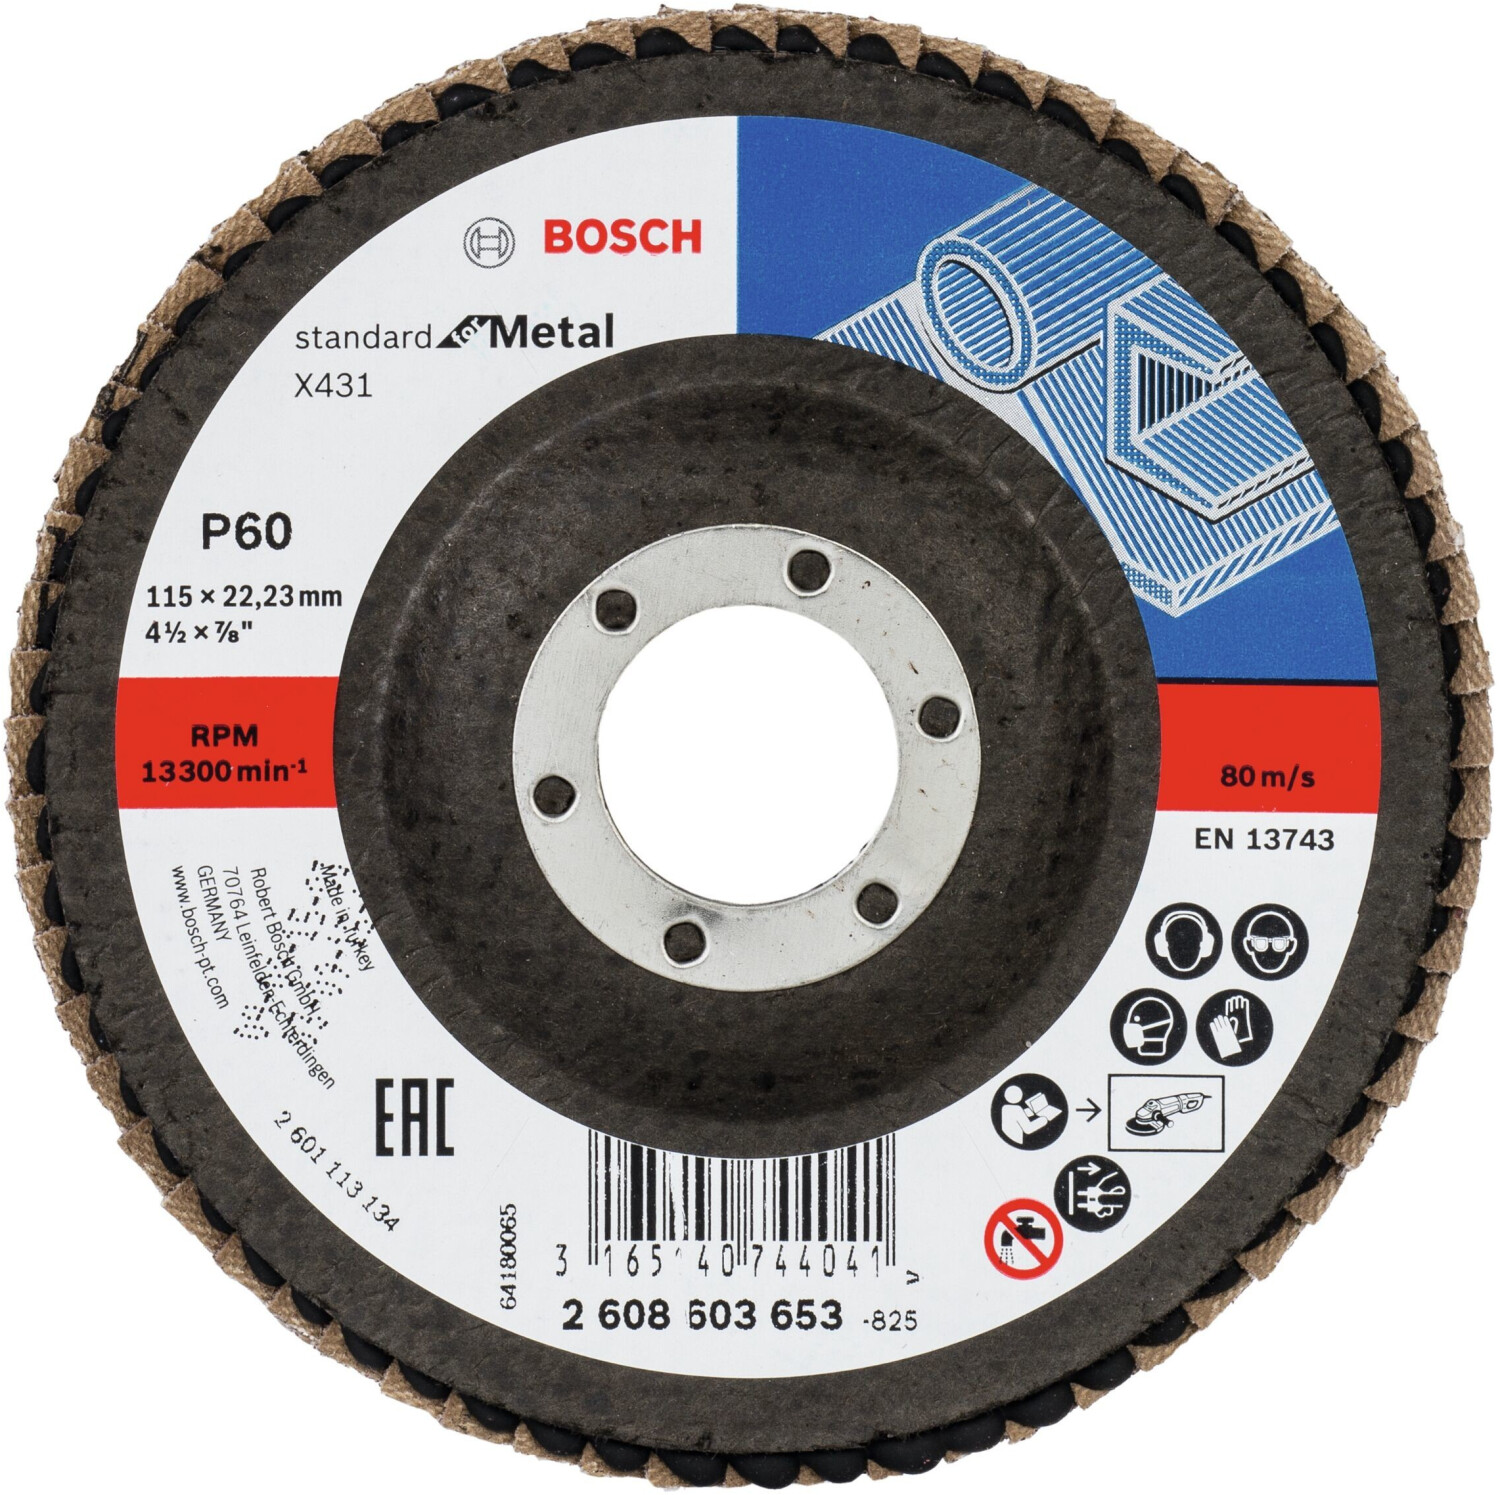 Photos - Abrasive Wheel / Belt Bosch X431 Standard for Metal - K60 D115  (2608603653)